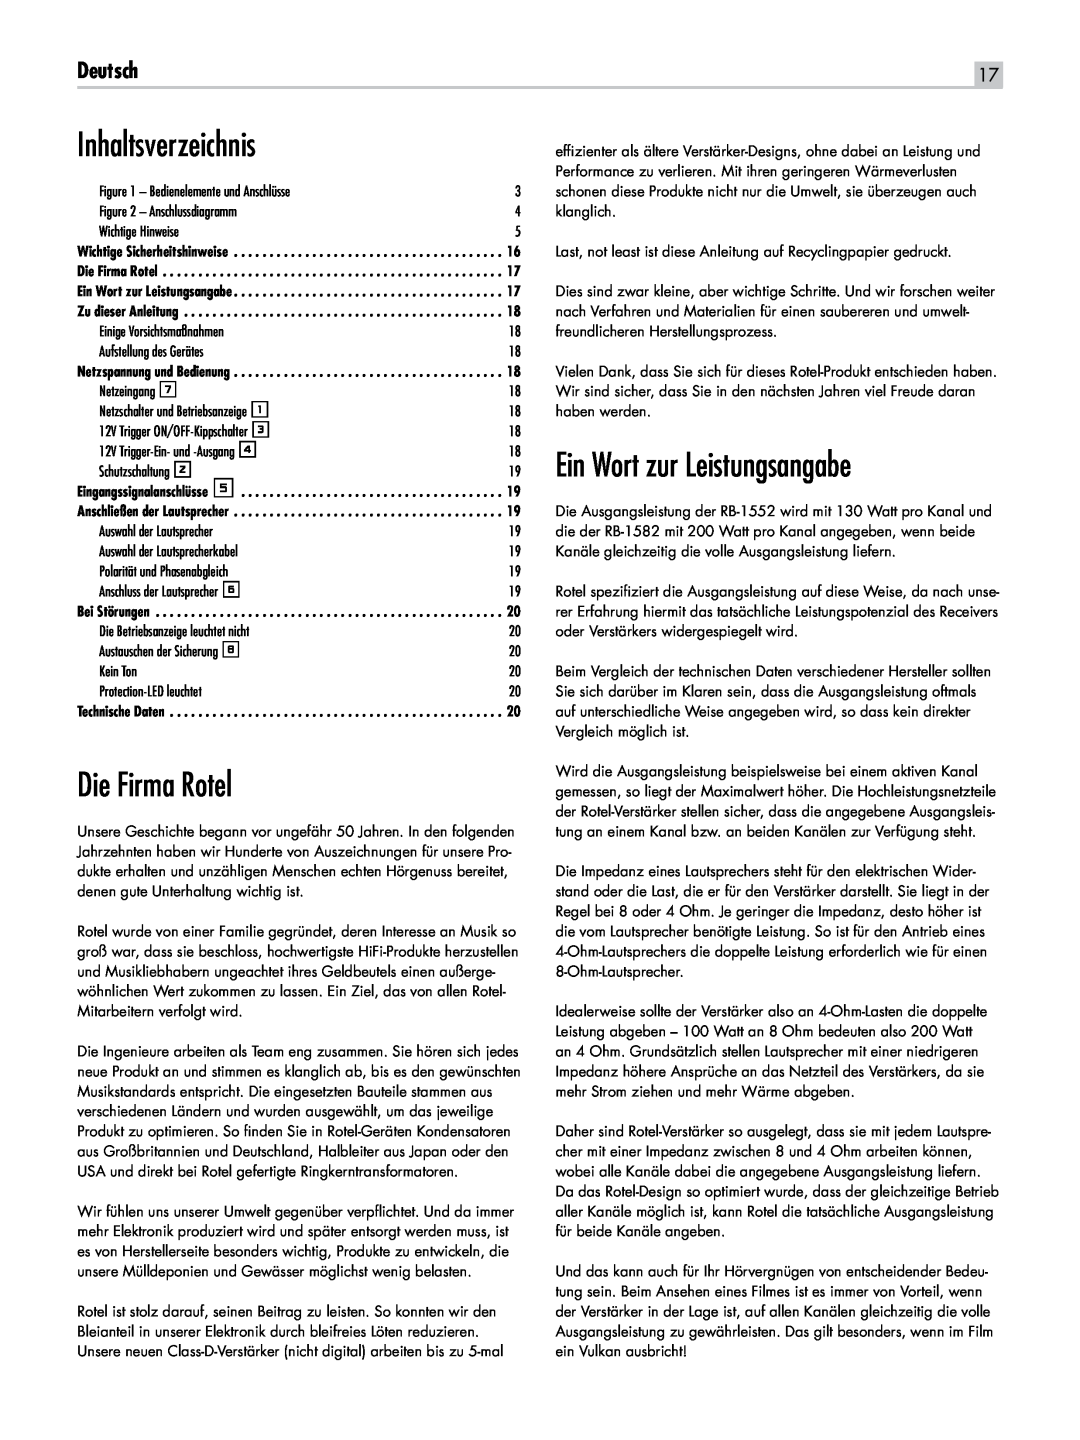 Rotel RB-1582, RB-1552 owner manual Inhaltsverzeichnis, Ein Wort zur Leistungsangabe, Die Firma Rotel, Deutsch 